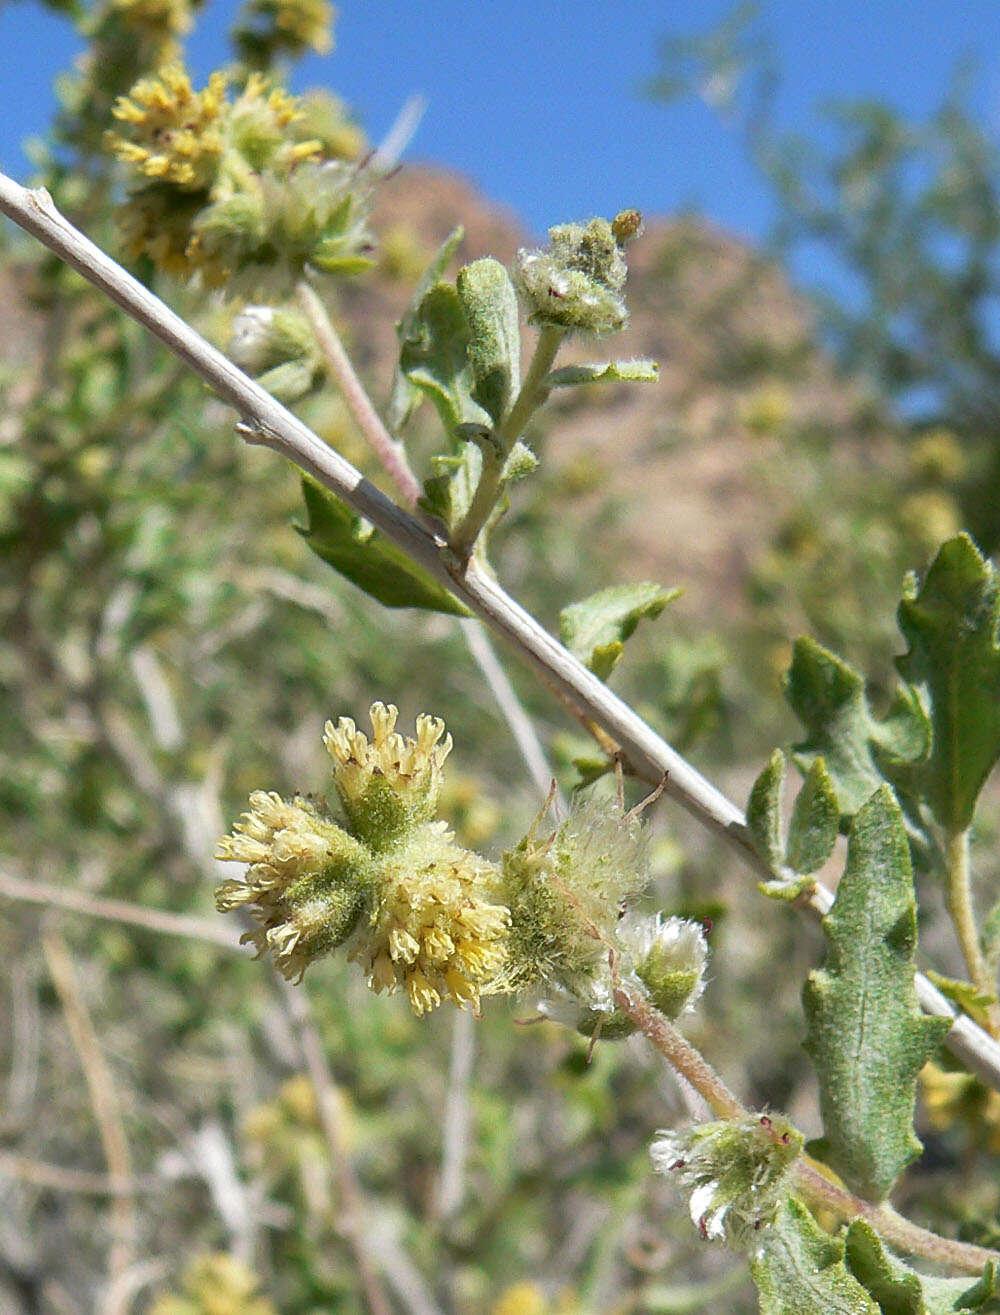 Image of woolly fruit bur ragweed